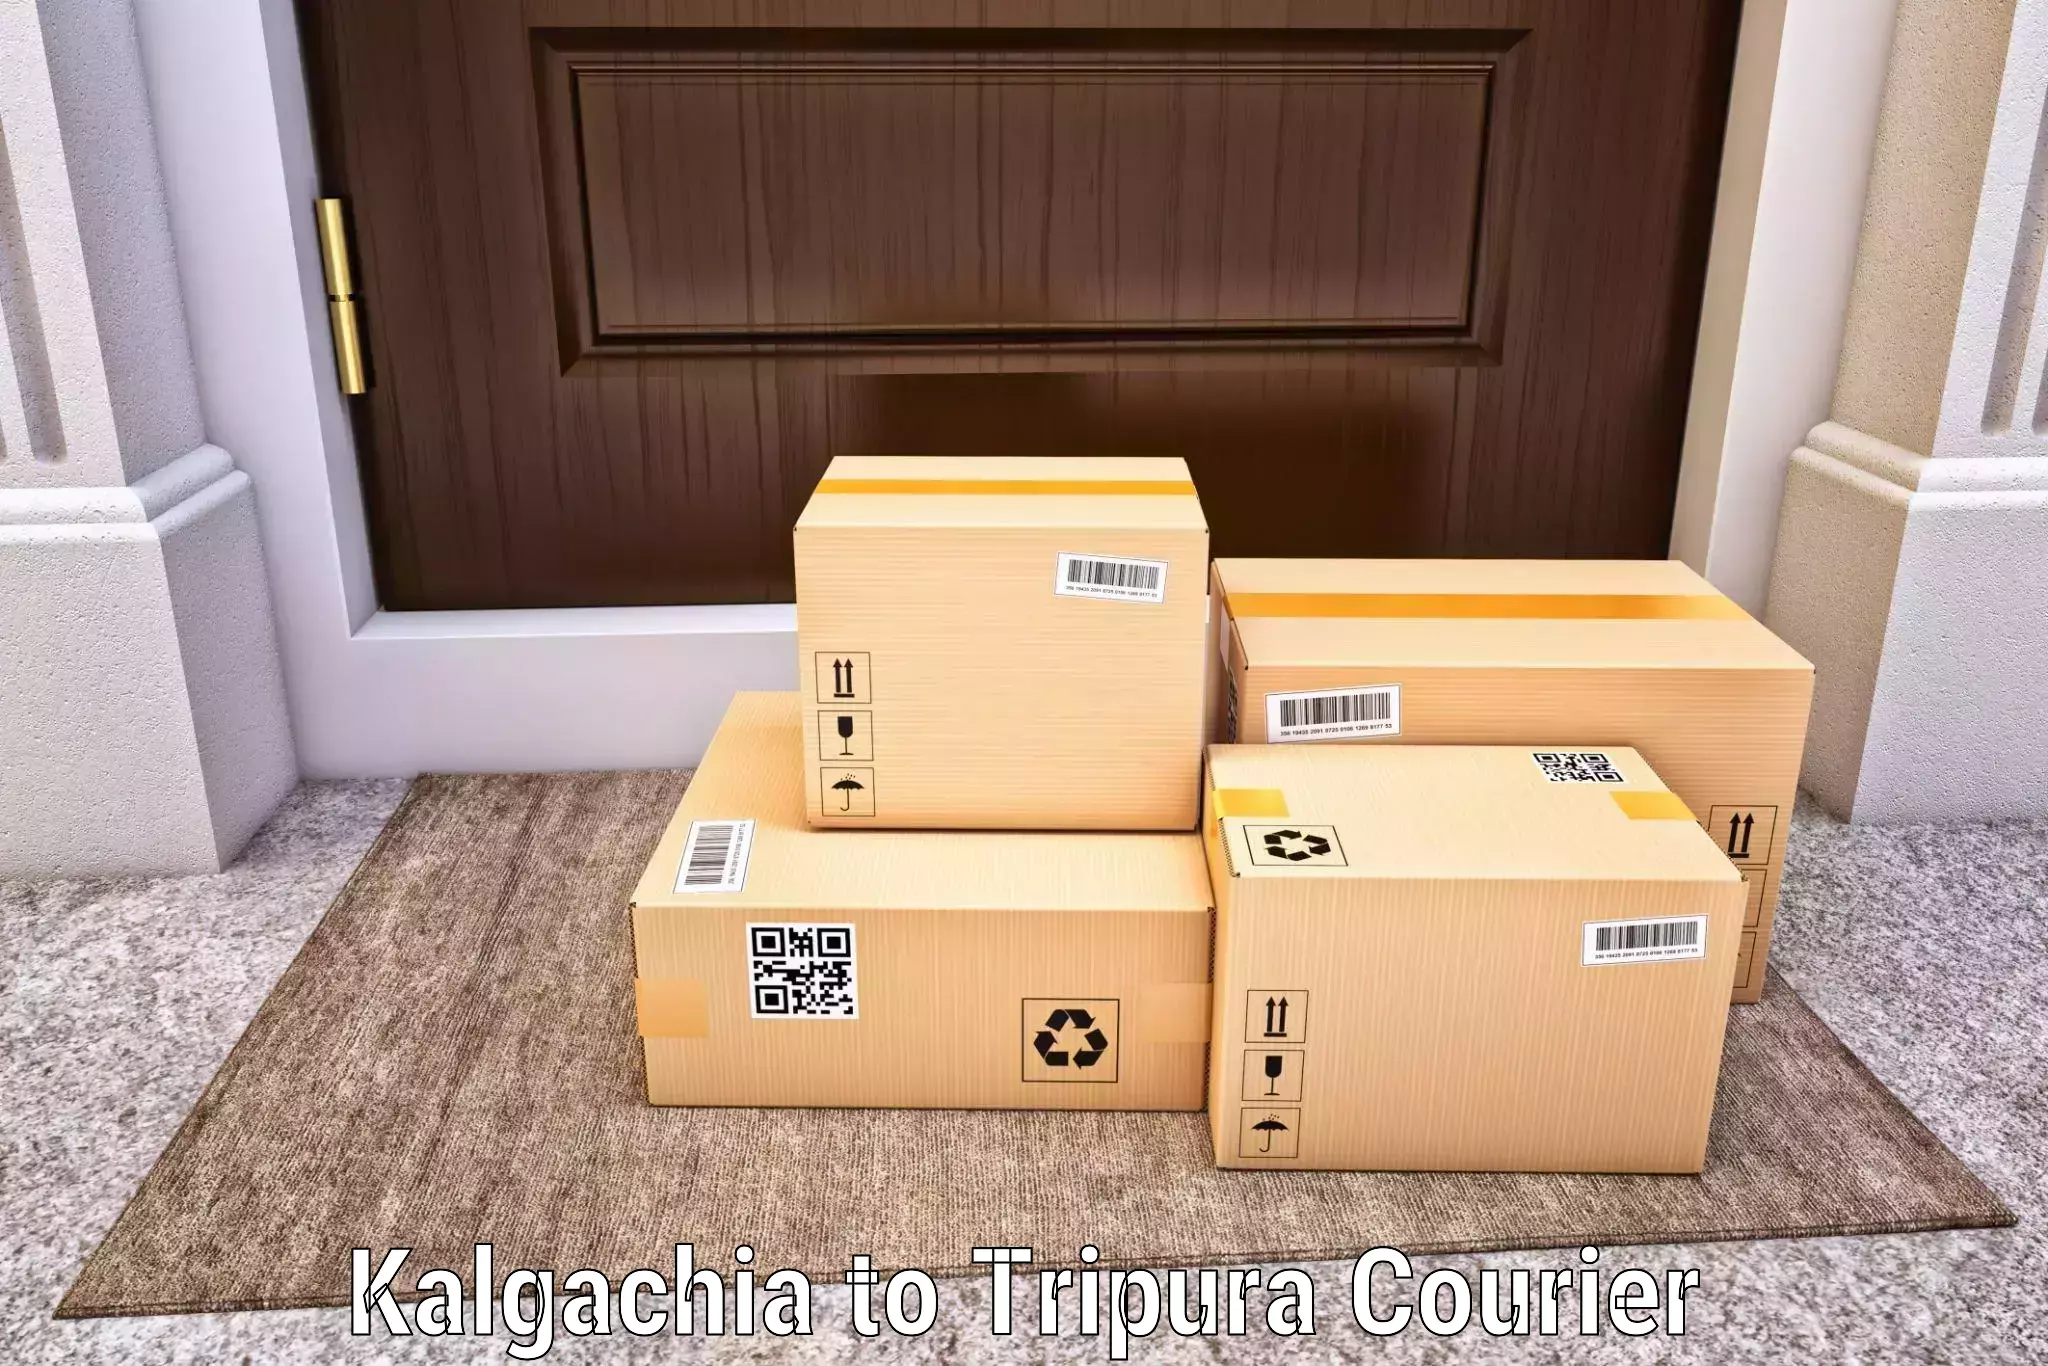 Customer-friendly courier services Kalgachia to Aambasa